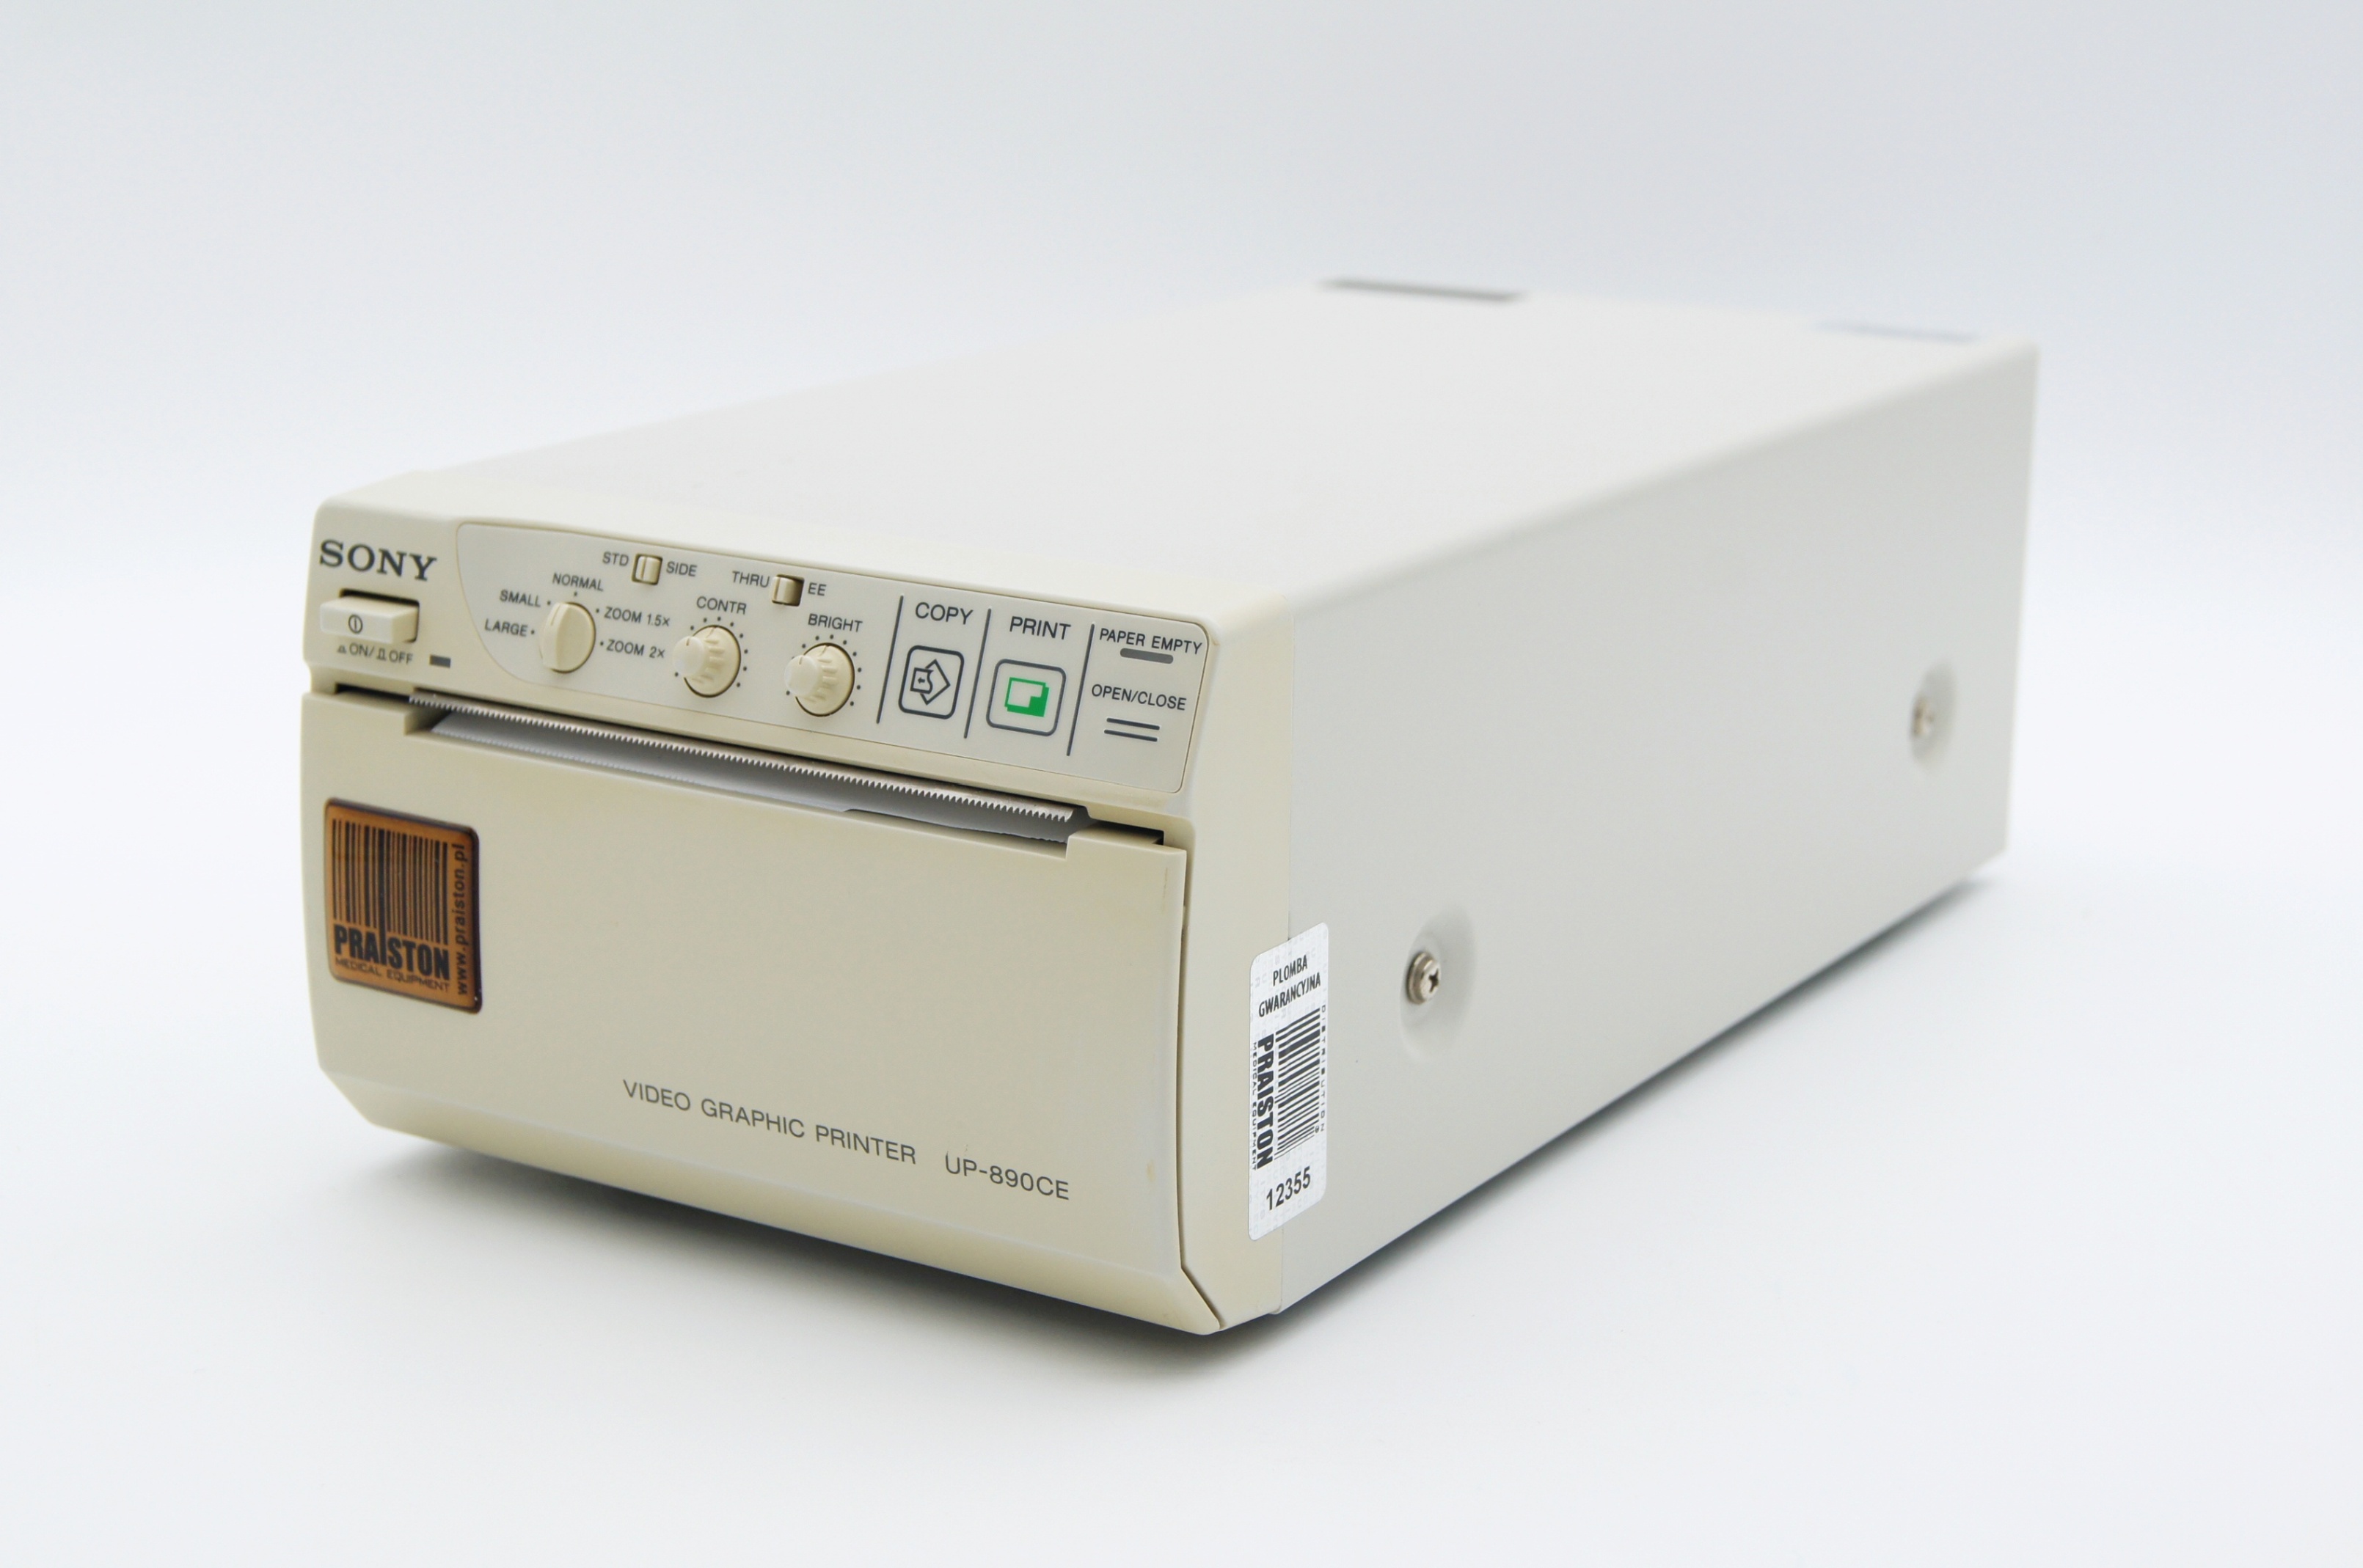 Videoprintery używane SONY UP - 890CE - Praiston rekondycjonowane